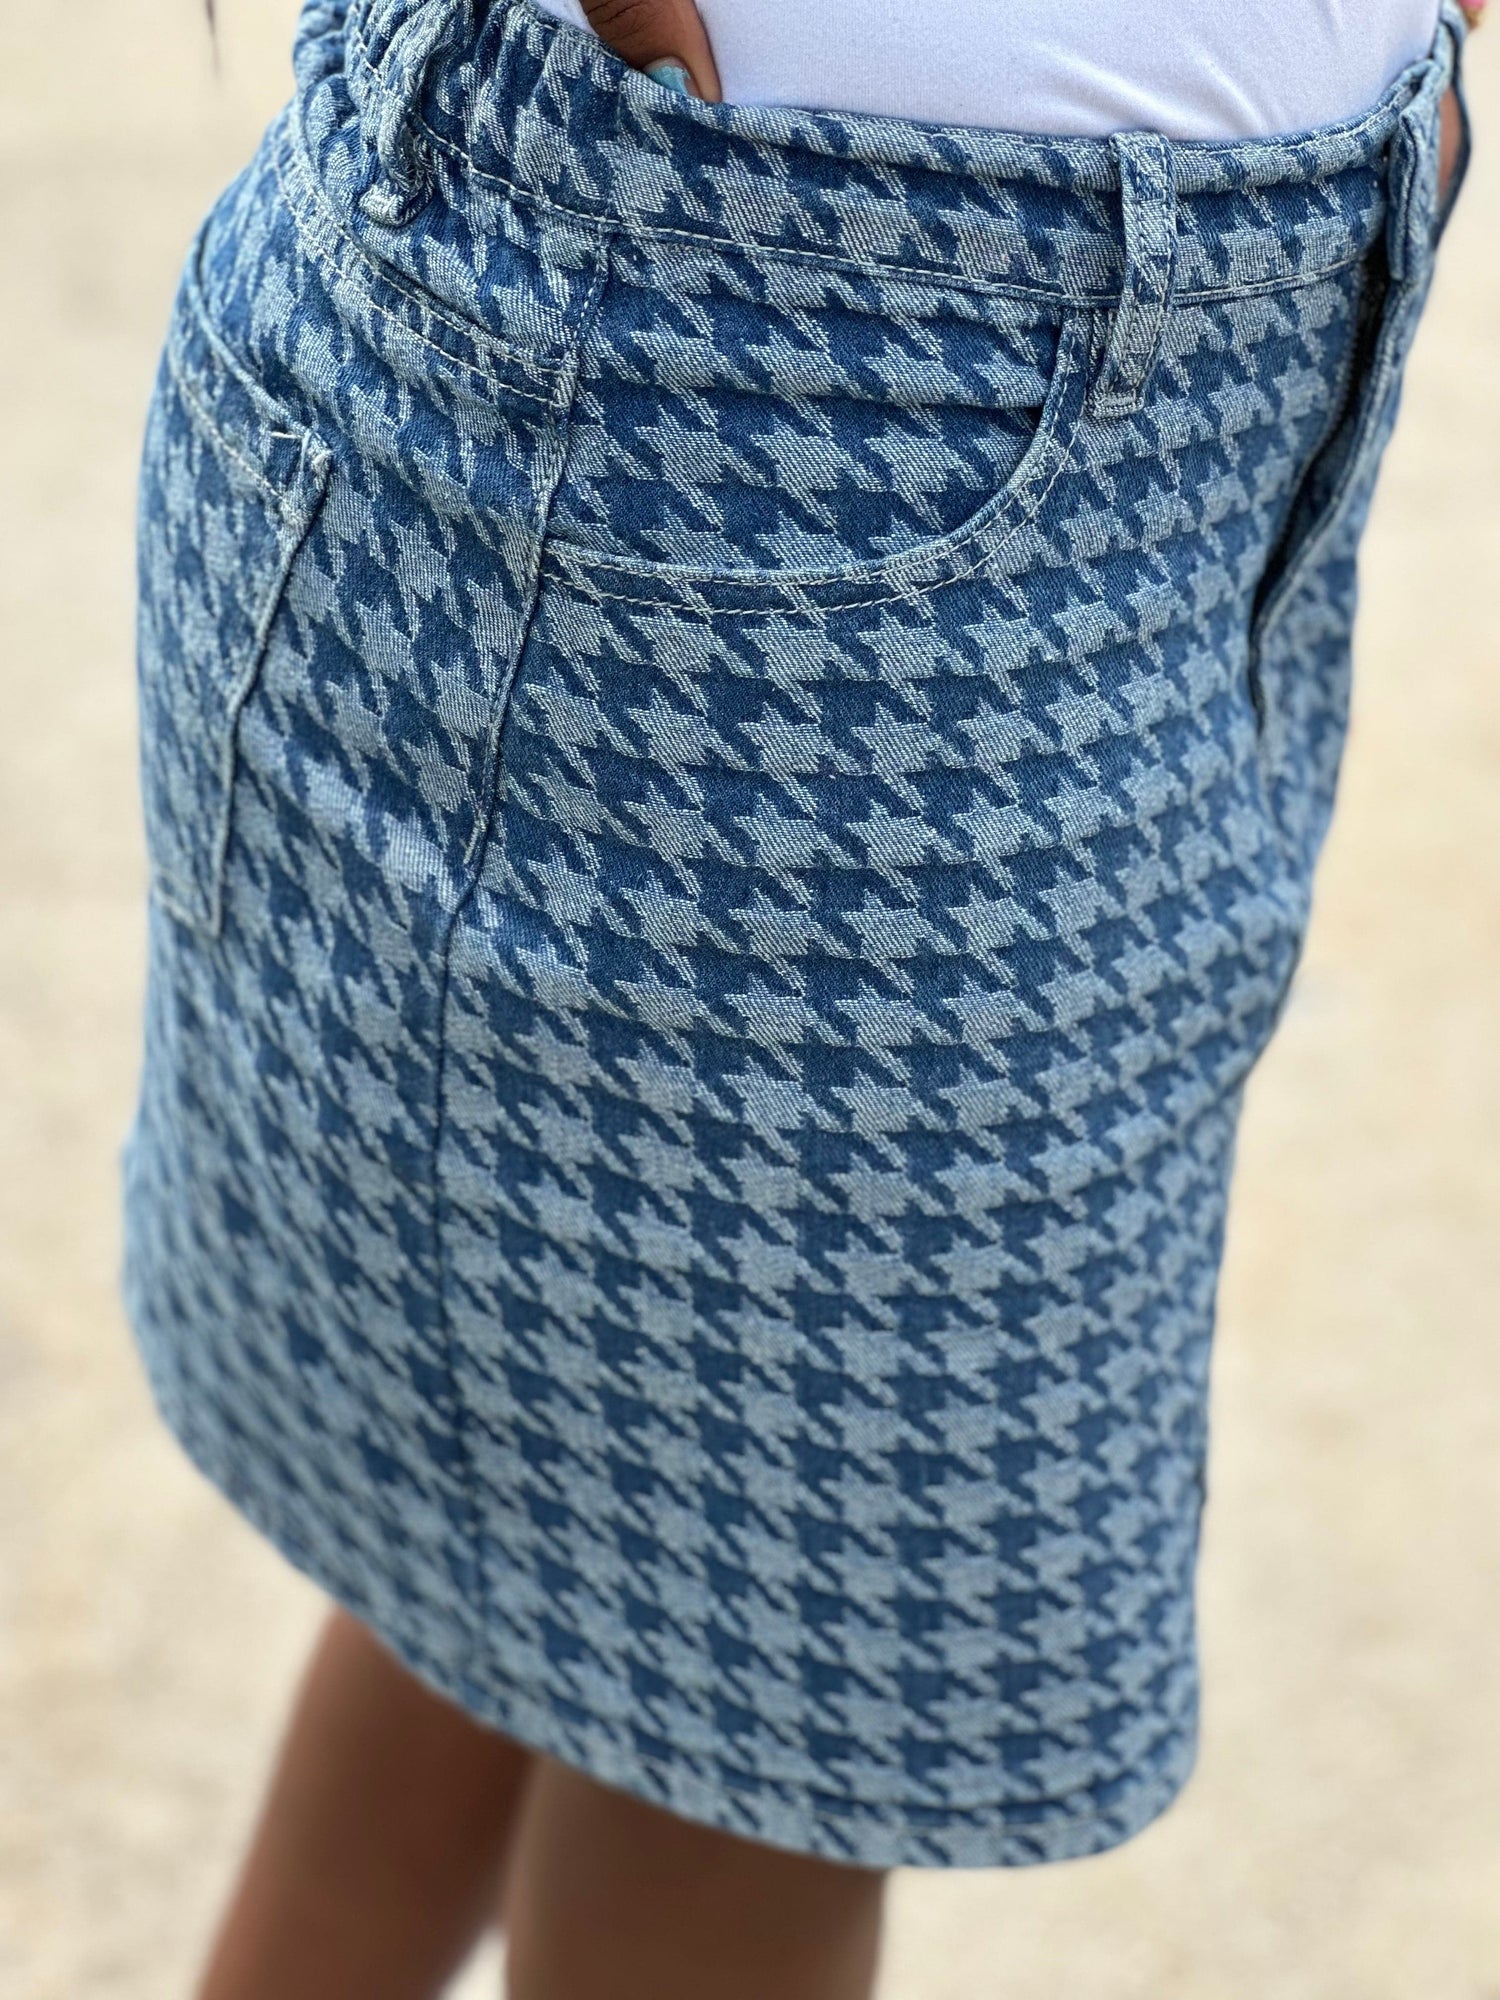 Fashionably, BBK! Girls Houndstooth Print Denim Skirt